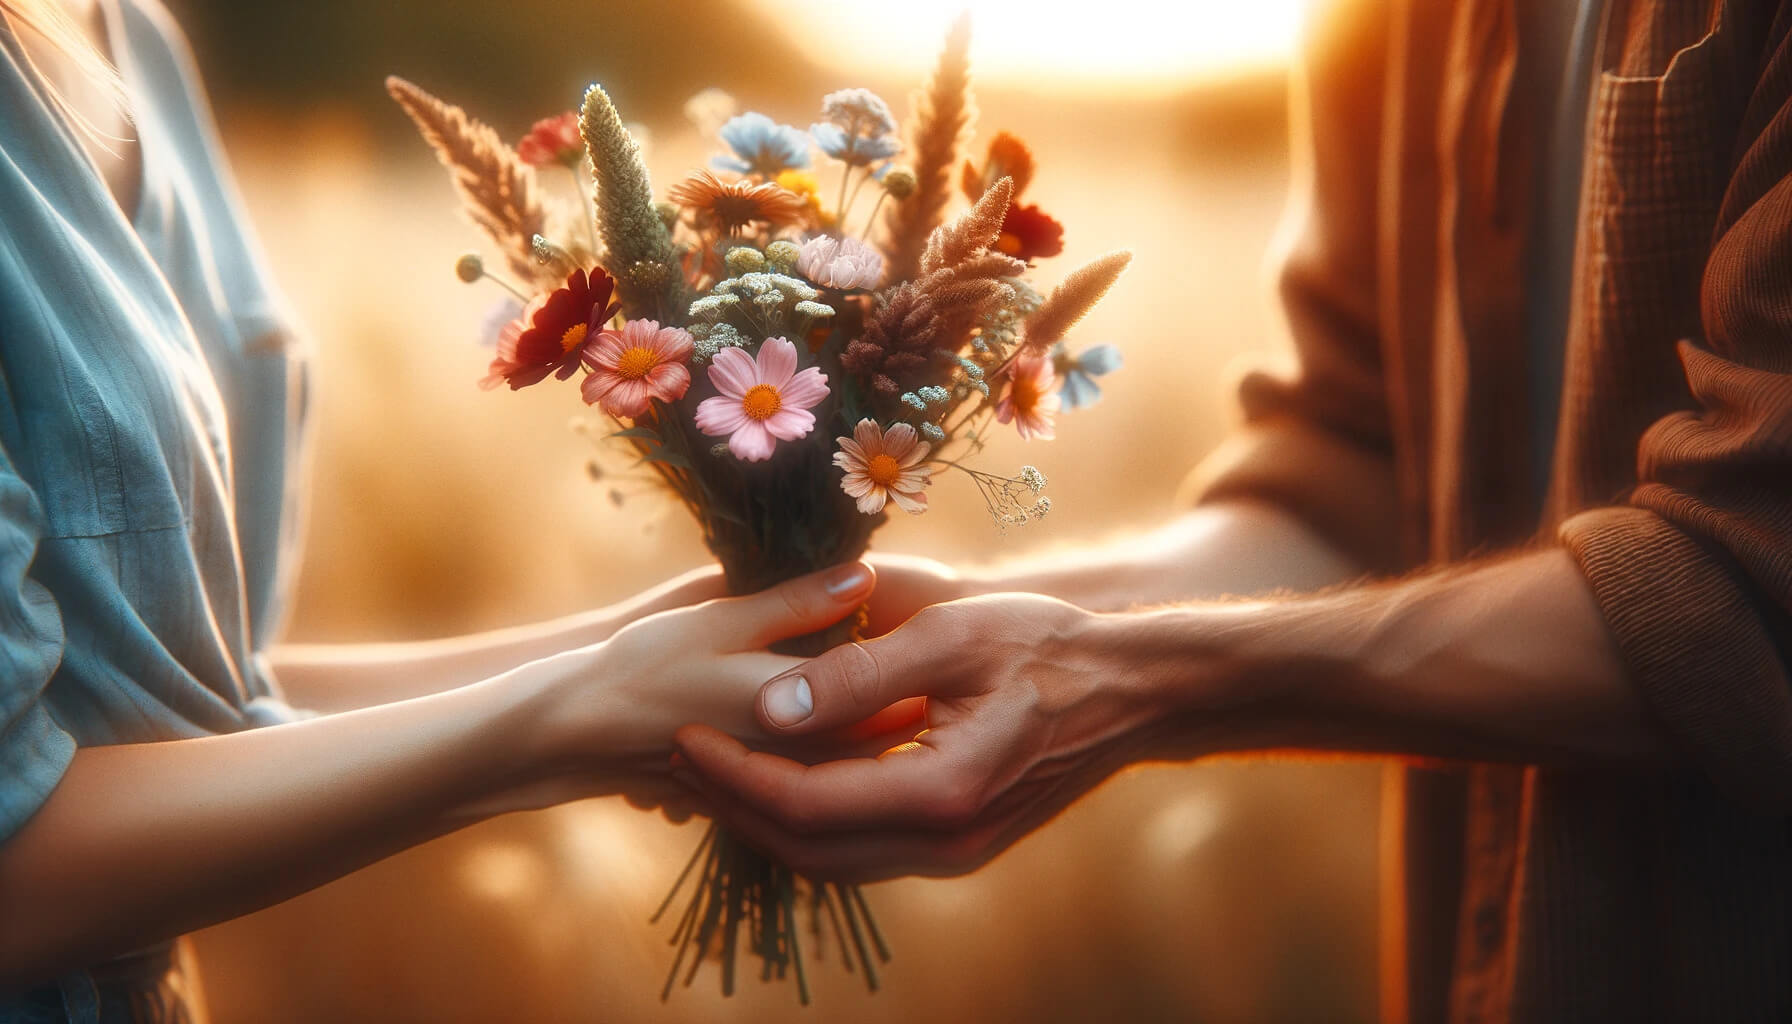 Bereit, Vertrauen zu pflanzen: Ein Blumenstrauß als Symbol für den Beginn einer Reise des Vertrauens und der Verbundenheit. Jede Blume repräsentiert eine Chance für Wachstum und Blüte in unseren Beziehungen. Ein Akt der Zuneigung und Hoffnung, der die Grundlage für tiefe Verbindungen legt.